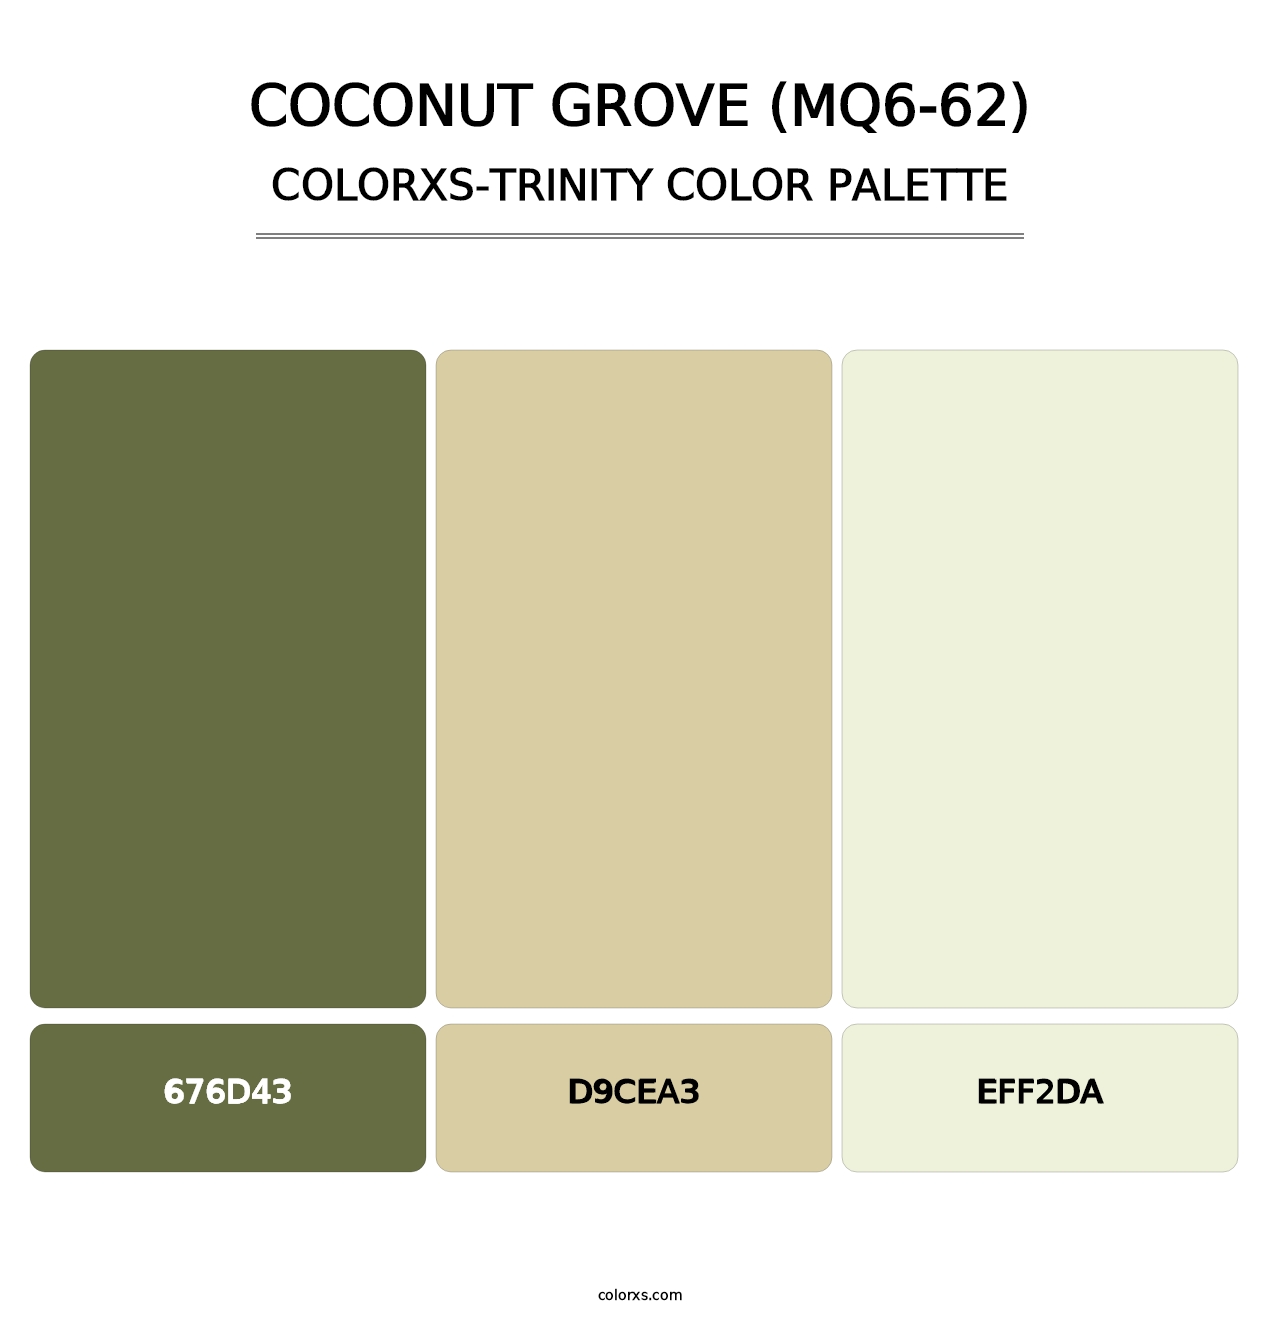 Coconut Grove (MQ6-62) - Colorxs Trinity Palette